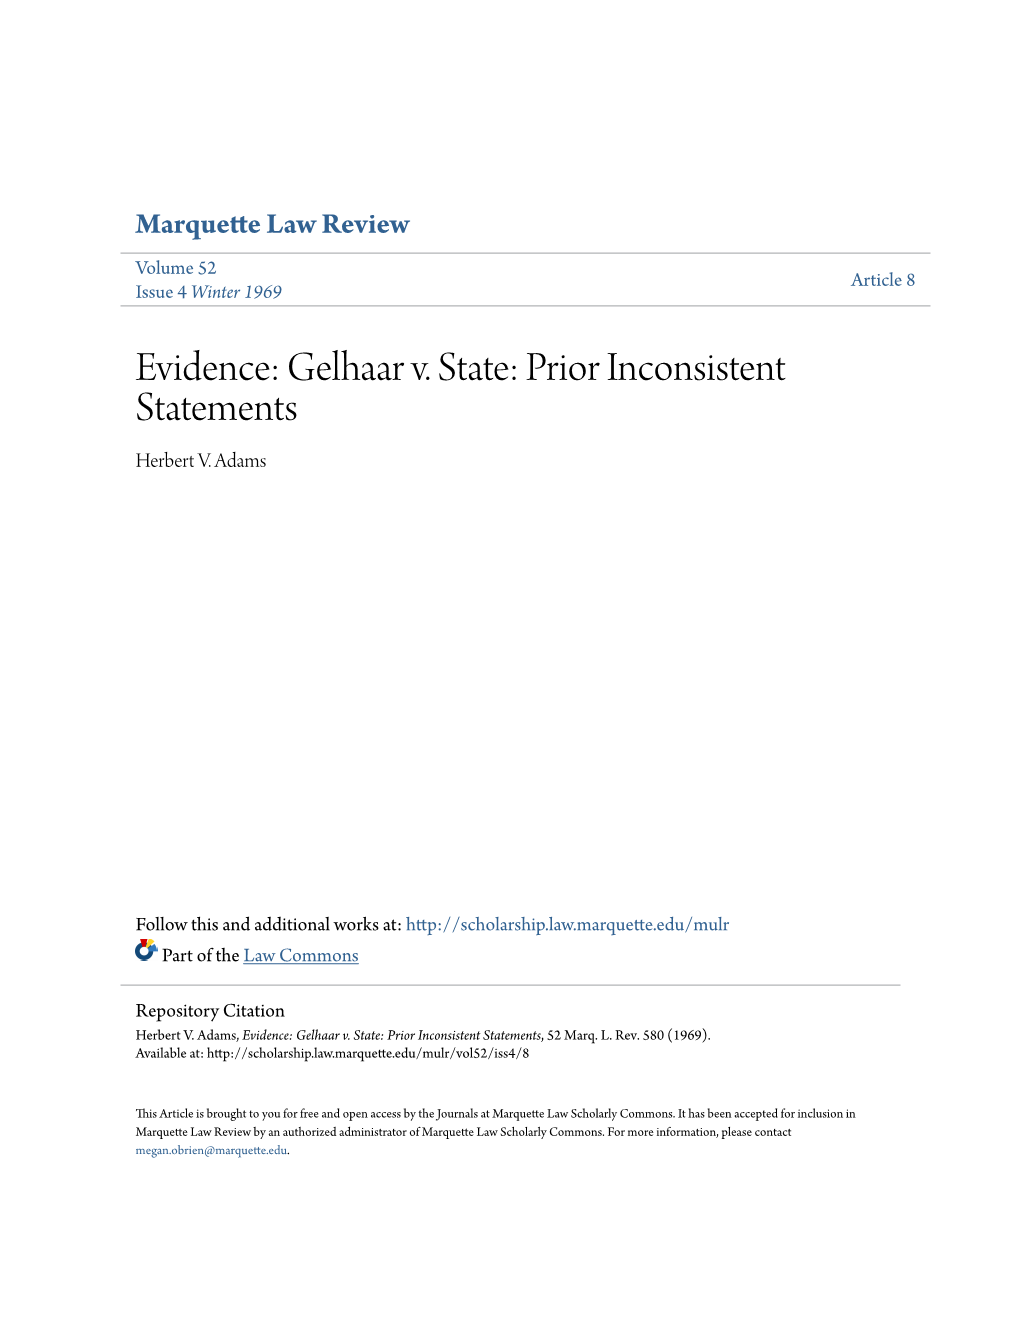 Evidence: Gelhaar V. State: Prior Inconsistent Statements Herbert V